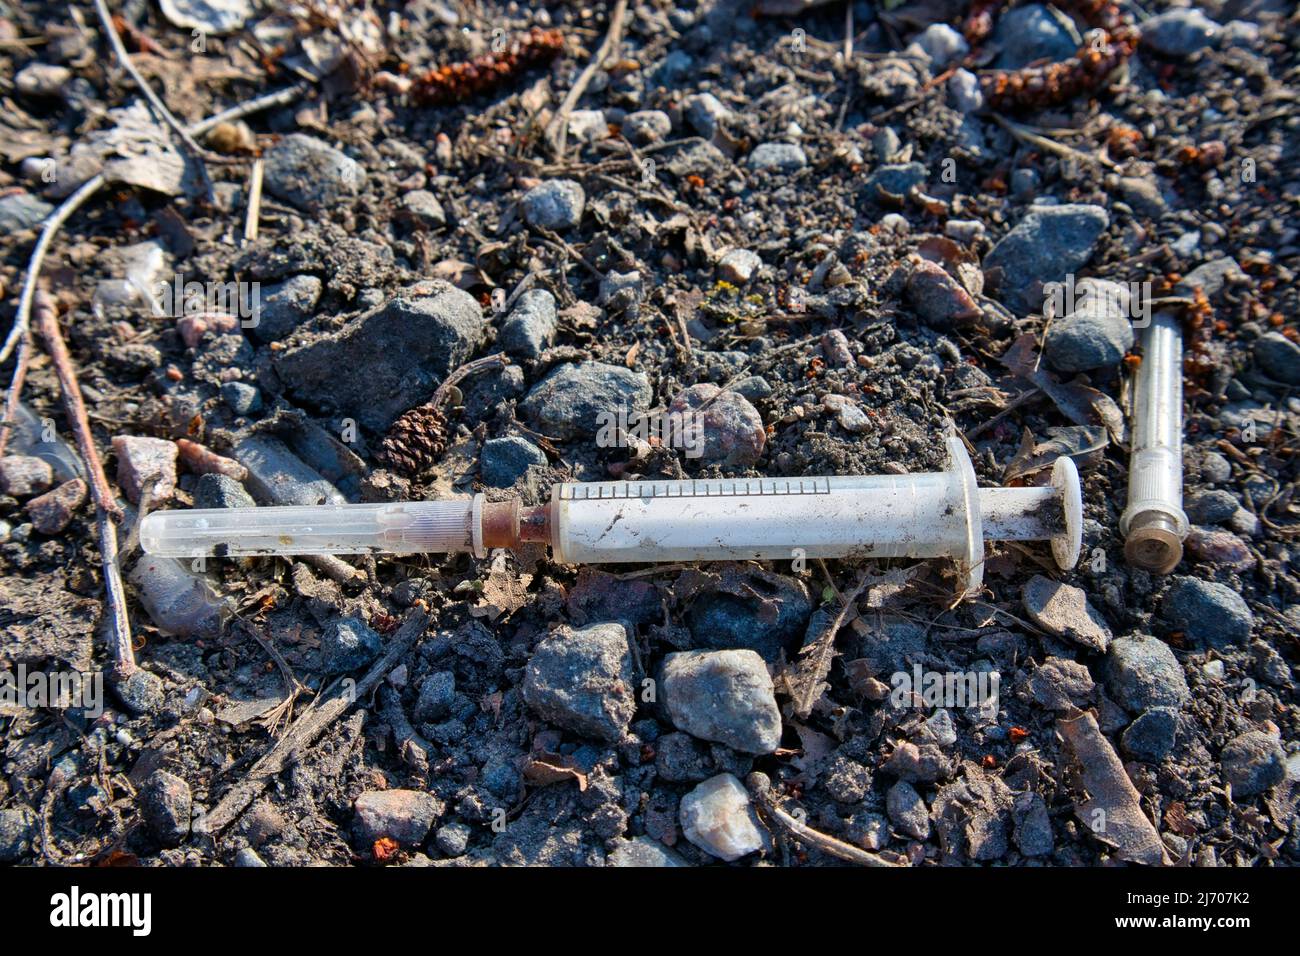 Used drug syringe on the ground Stock Photo